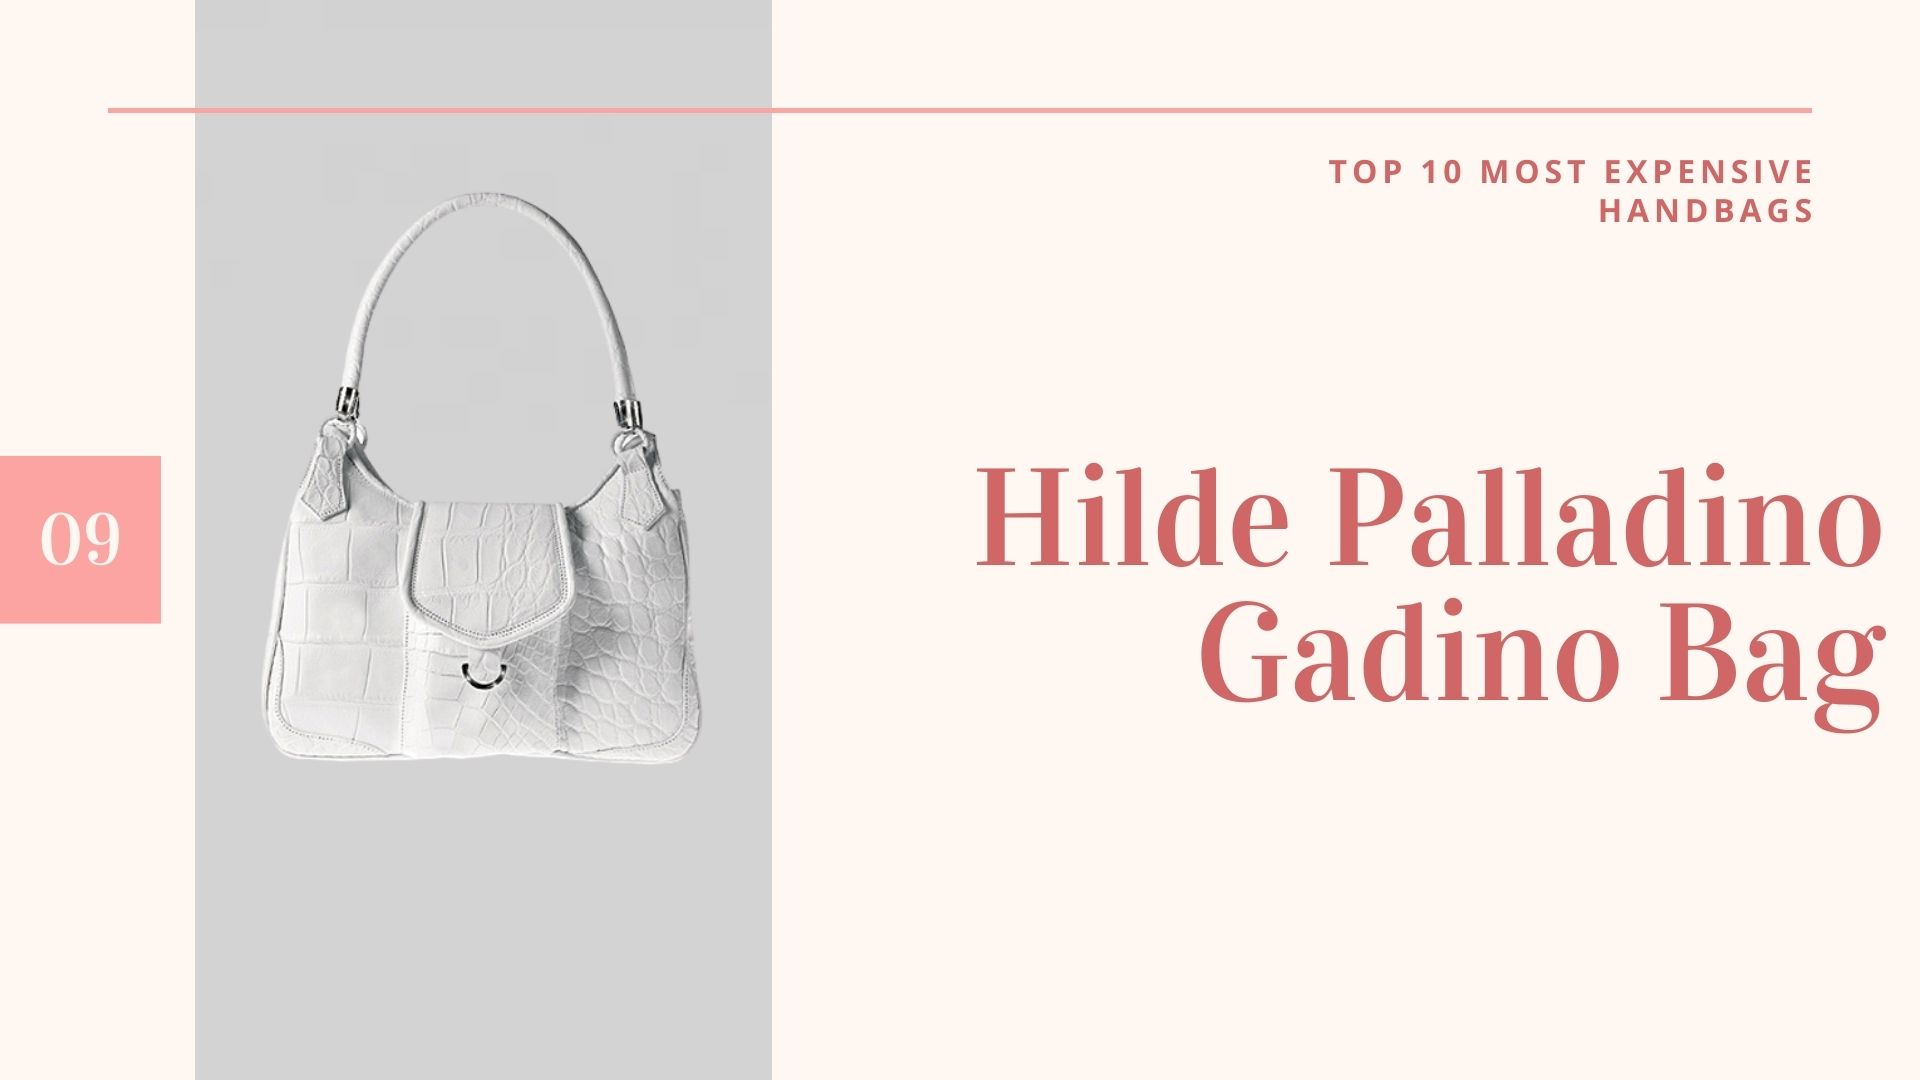 กระเป๋าราคาแพงที่สุดในโลก-กระเป๋าราคาแพงที่สุดในโลก-10กระเป๋าแพงที่สุดในโลก-อันดับที่ 9 Hilde Palladino Gadino Bag-กระเป๋าแพงที่สุดในโลก ราคา